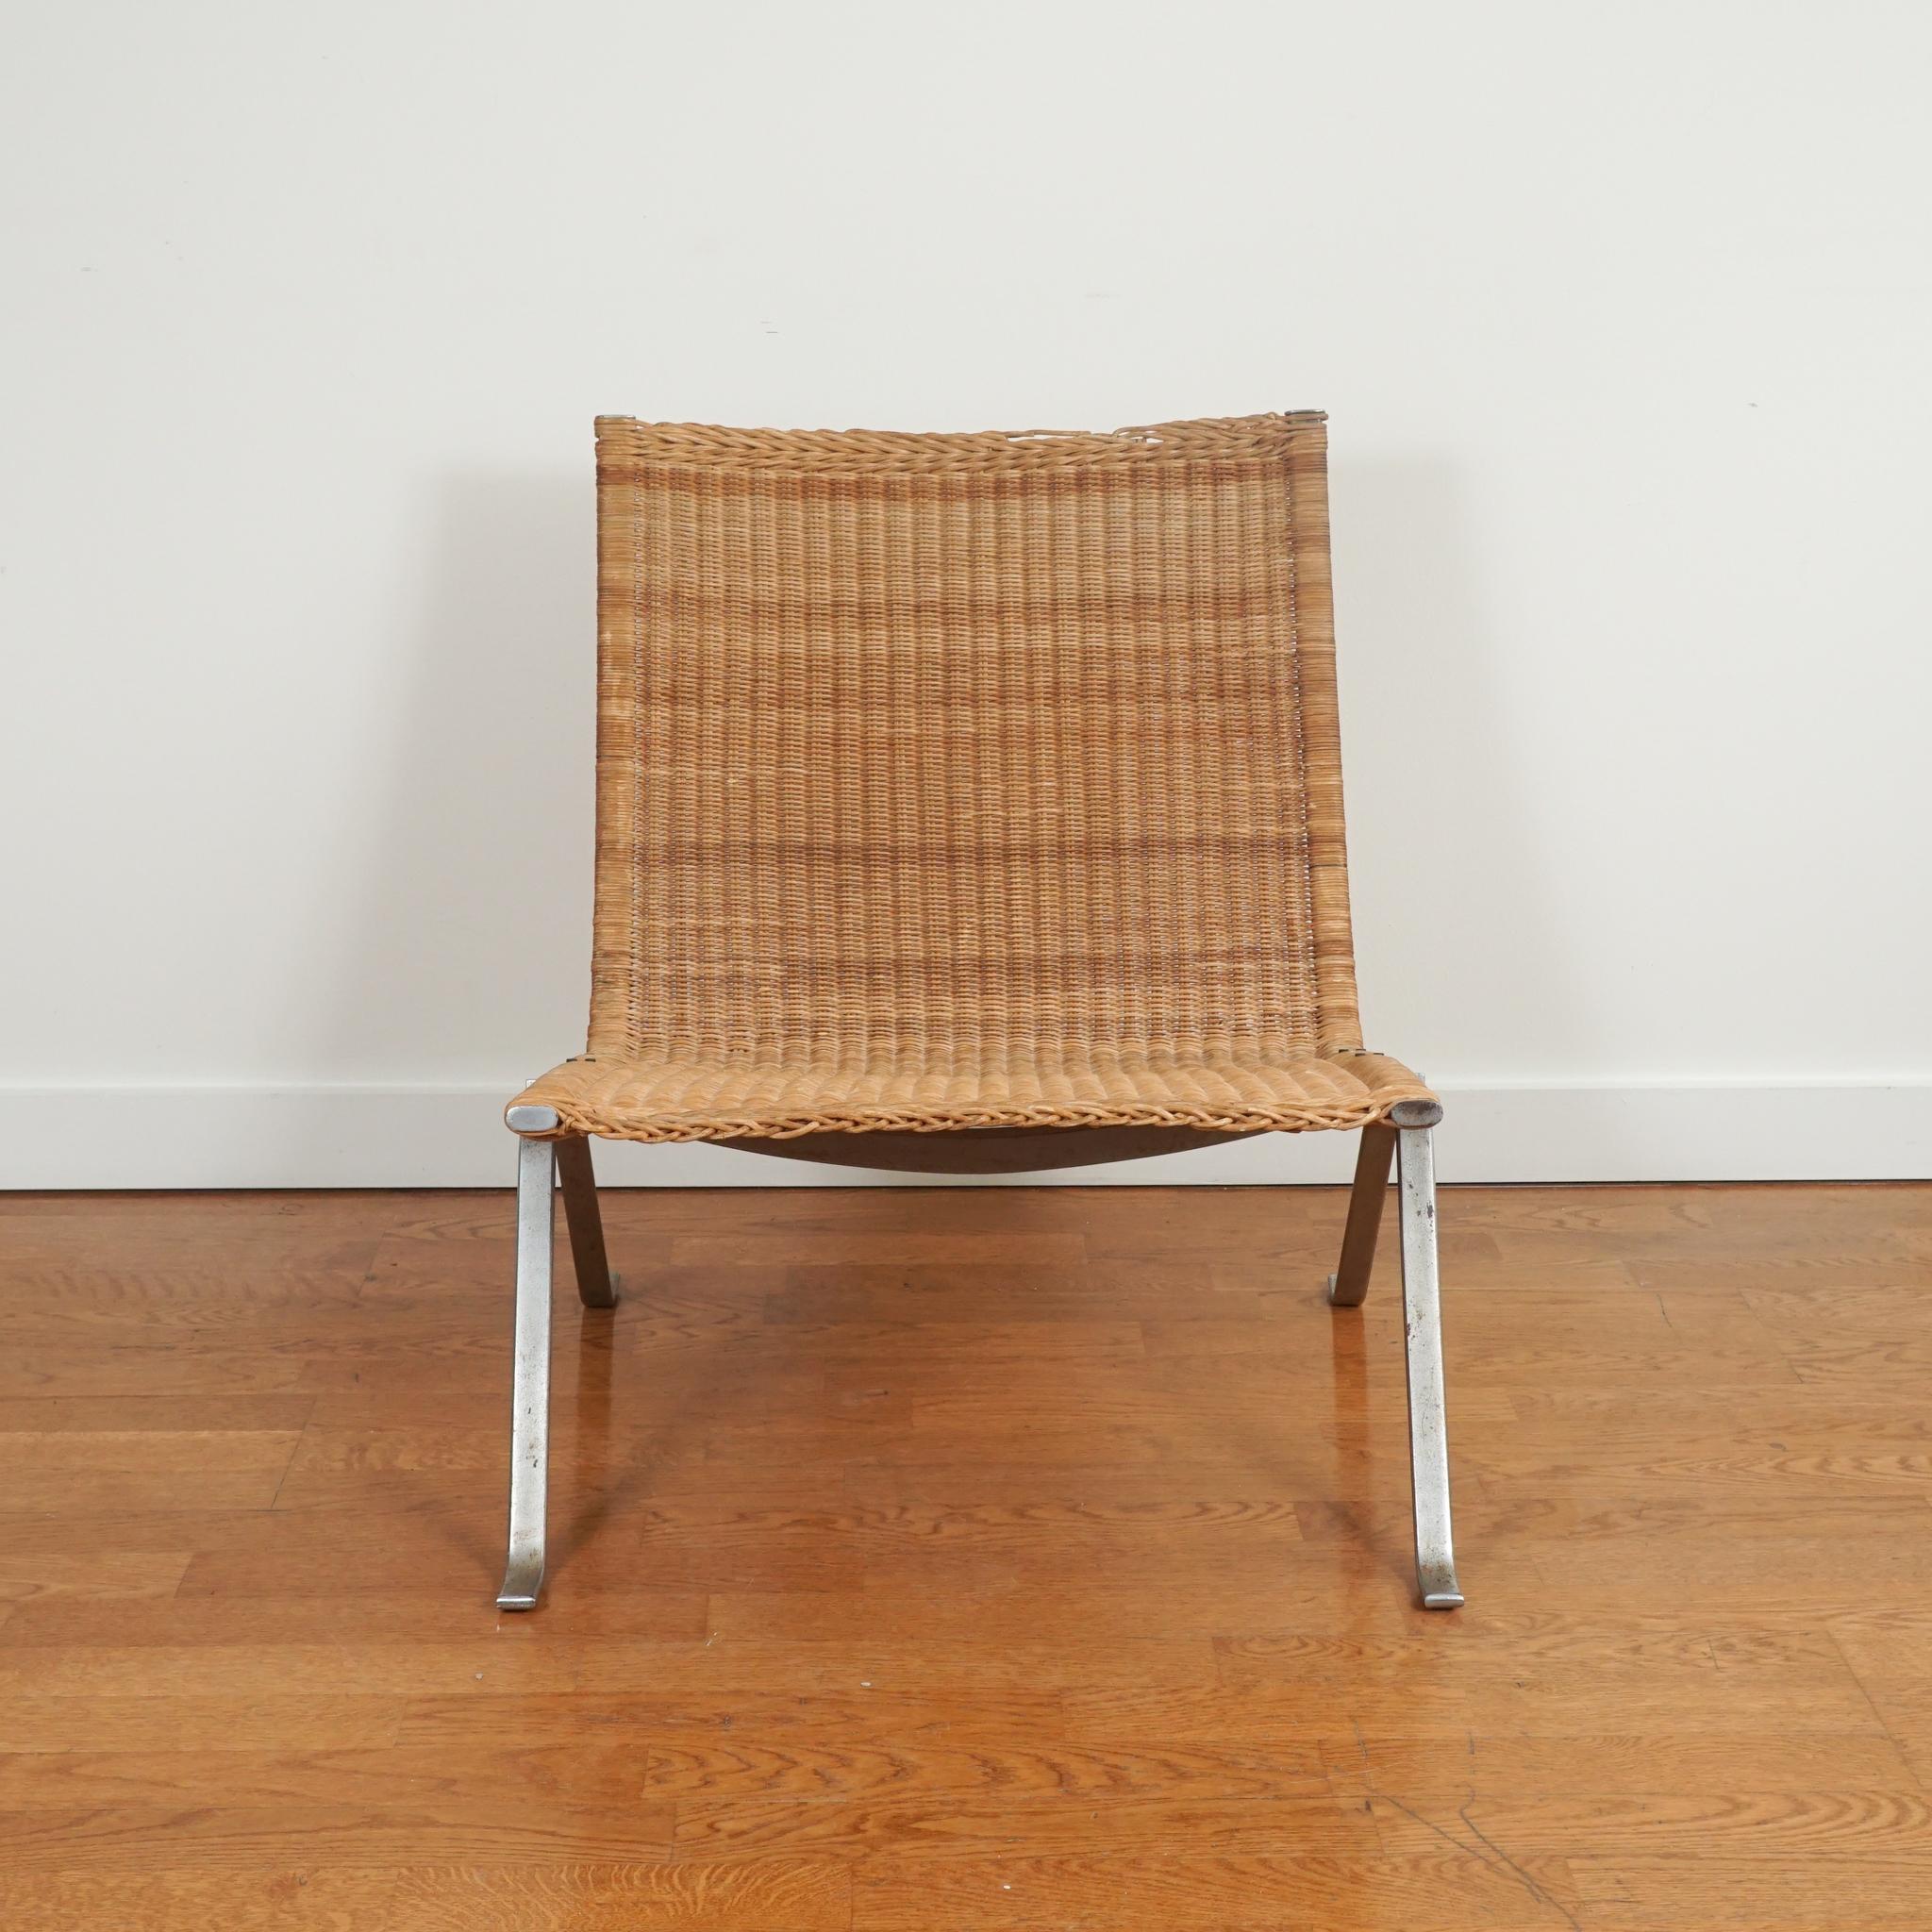 Hautement reconnaissable et extrêmement désirable, cette chaise longue Poul Kjaerholm PK 22 en osier et en acier inoxydable est l'une des deux disponibles. Réalisée en osier et en acier brossé, la chaise de Poul Kjaerholm pour E. Kold Christensen a